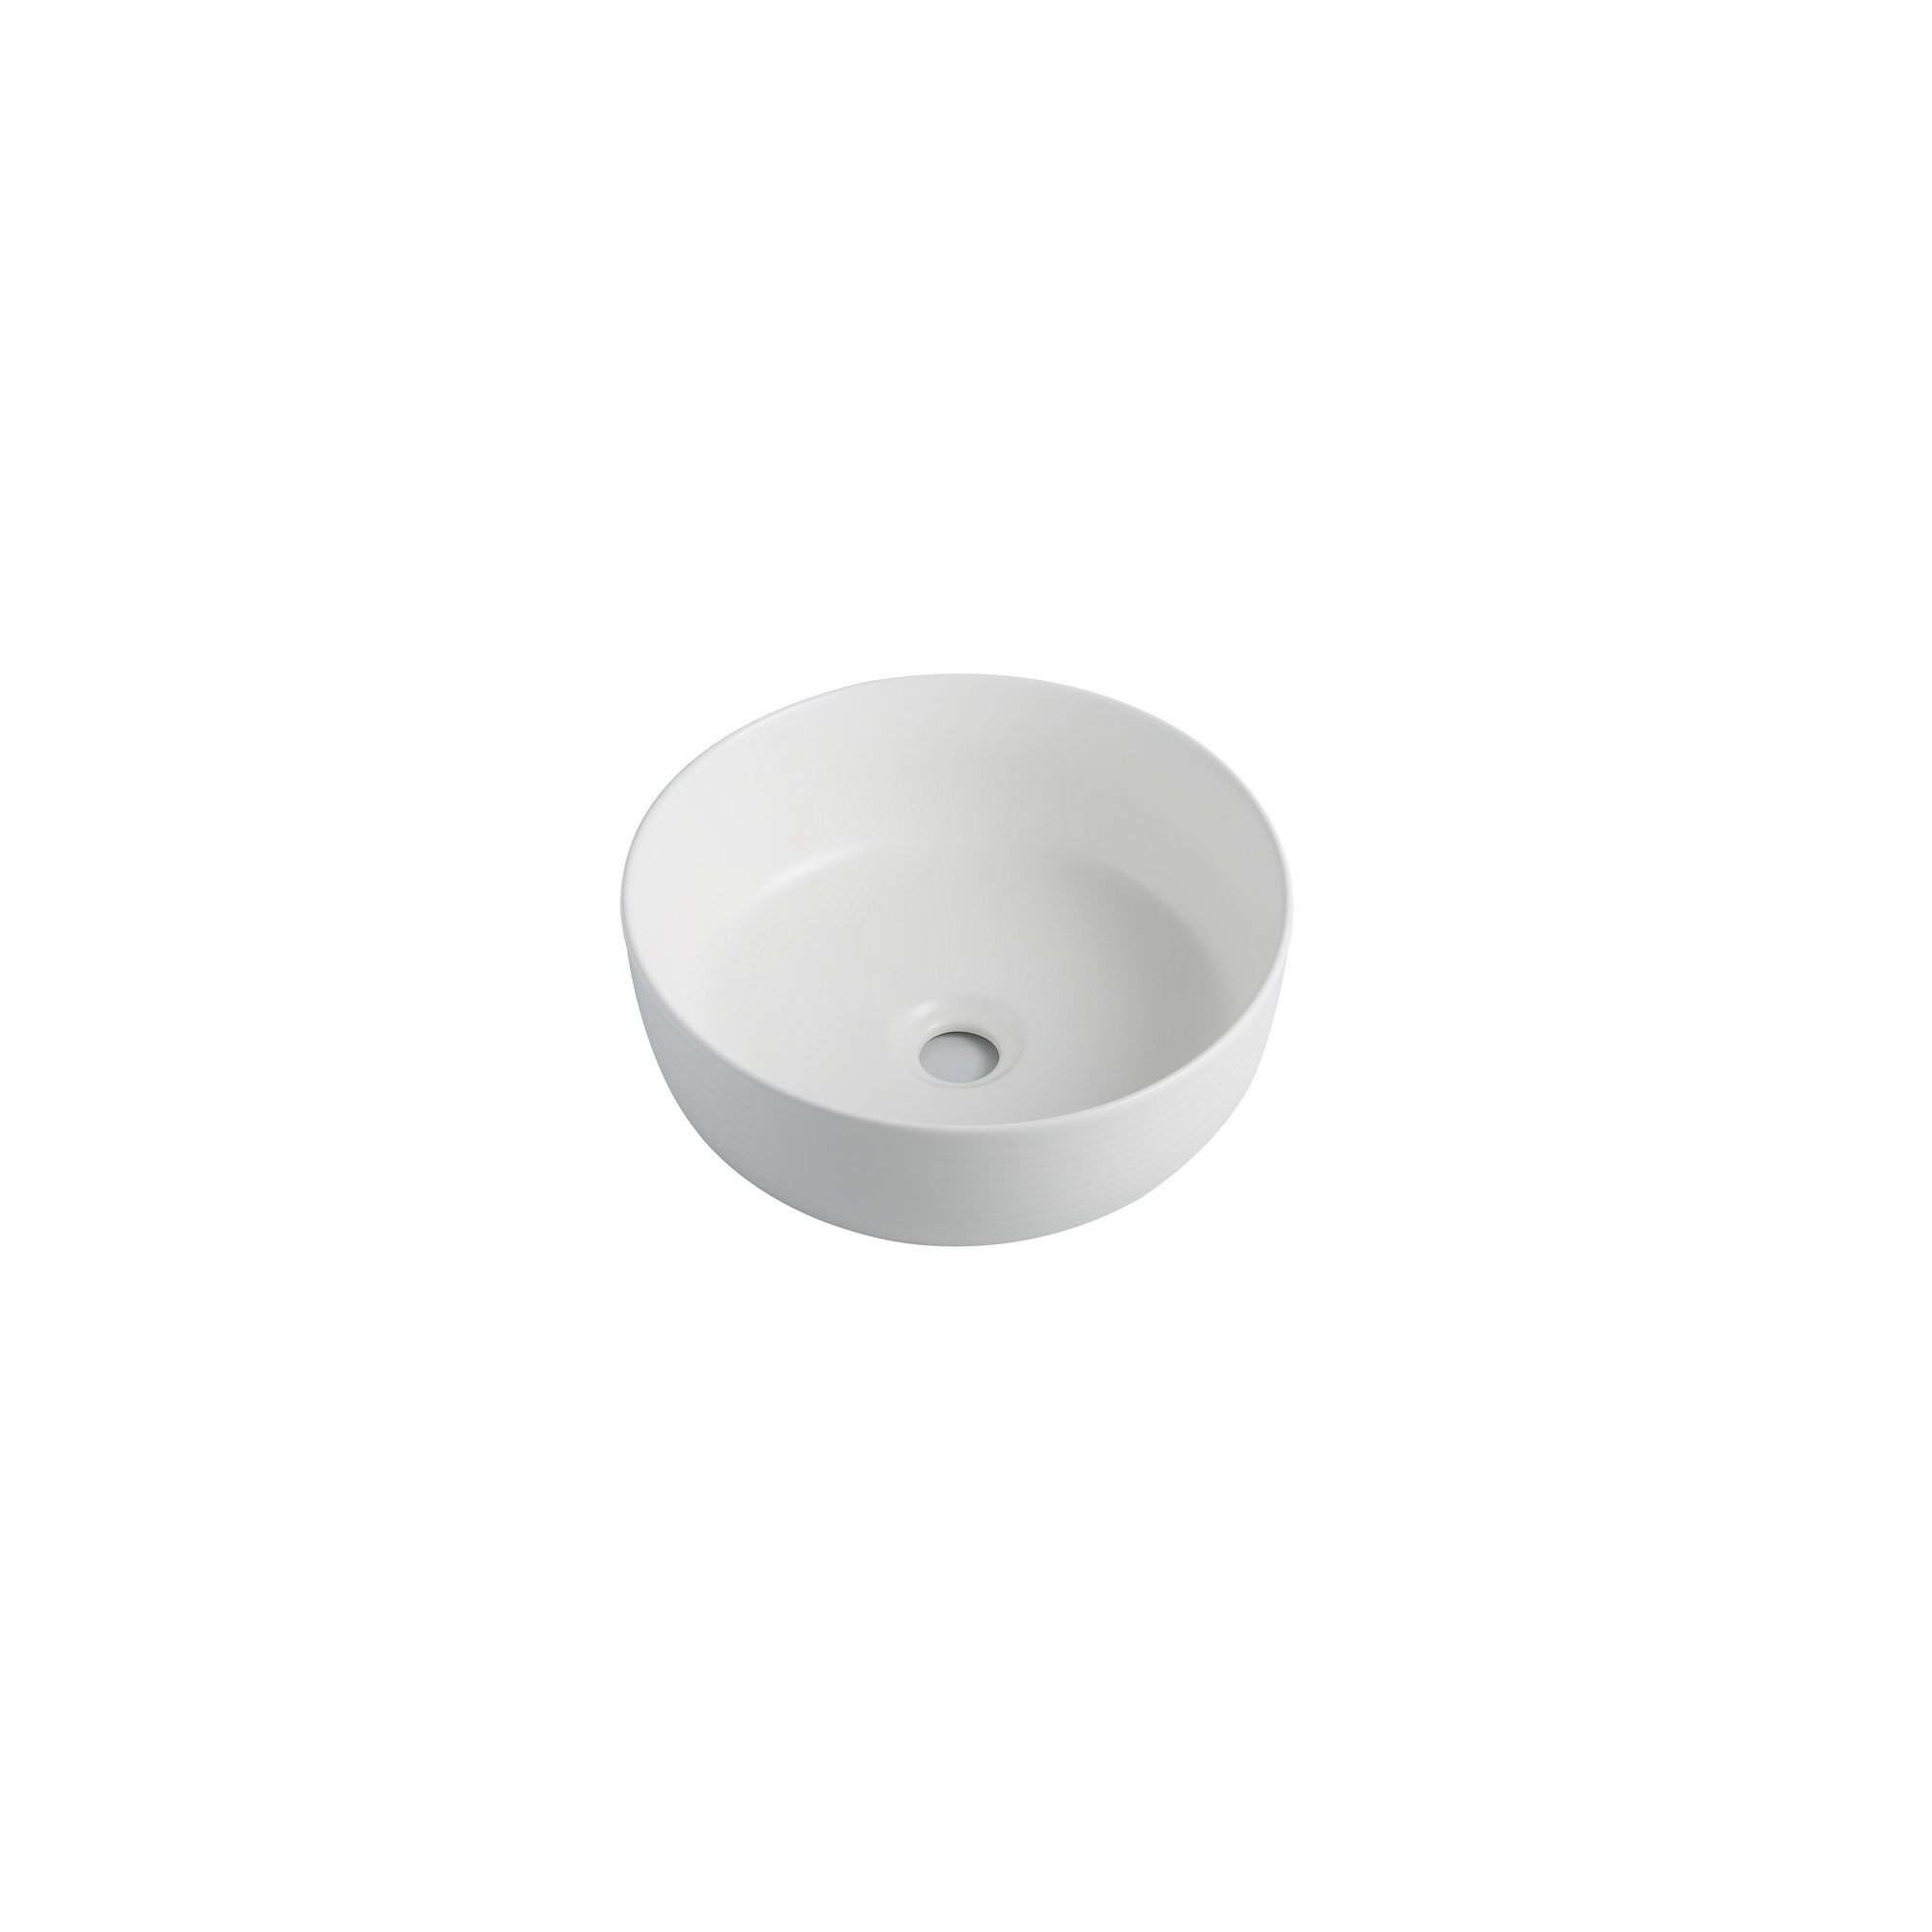 Aufsatzwaschtisch 'Taos' Keramik matt white Ø 35,8 x 13,7 cm + product picture